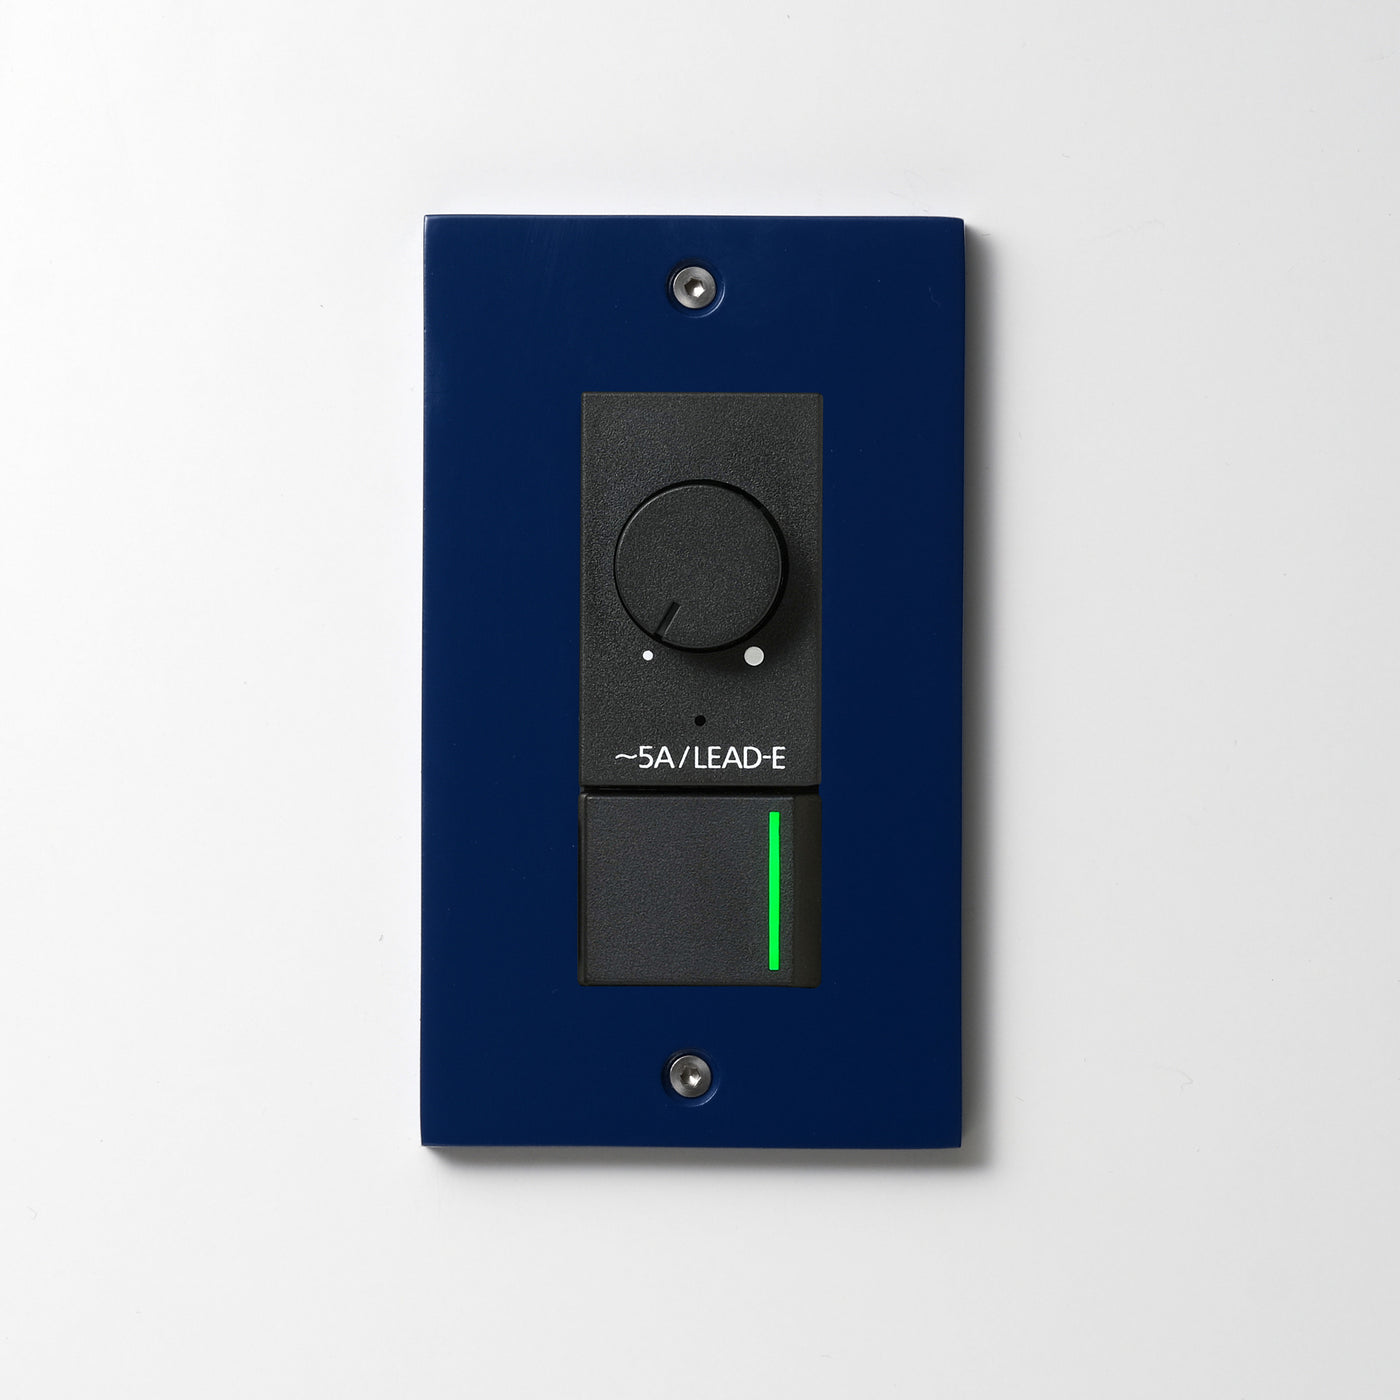 アルミダイキャスト（ブルー）プレート  <br>+ NK 正位相制御方式ライトコントロール＋片切、3路ガイドランプ（グリーン）スイッチ　 ブラック